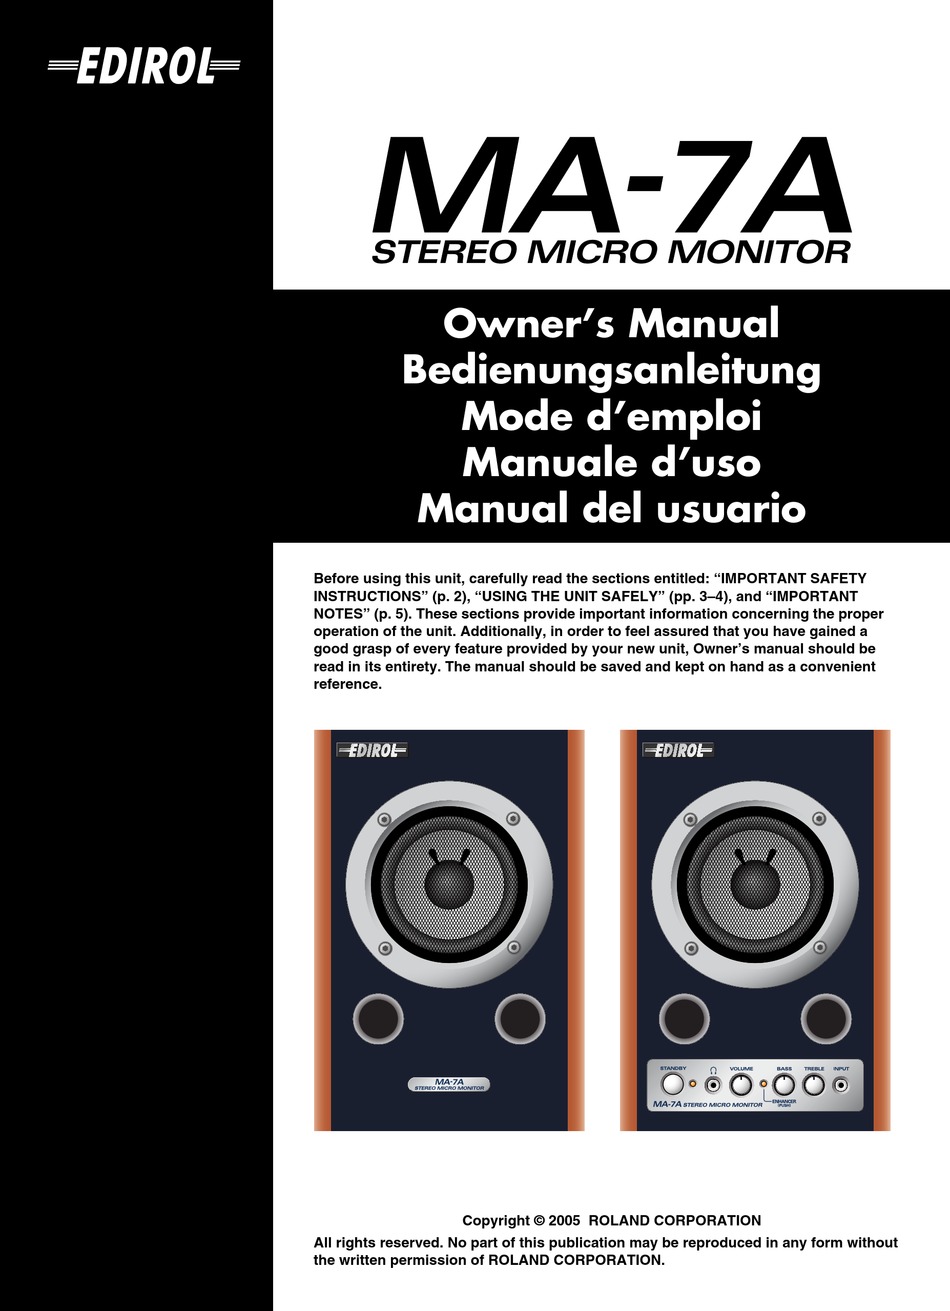 EDIROL MA-7A OWNER'S MANUAL Pdf Download | ManualsLib